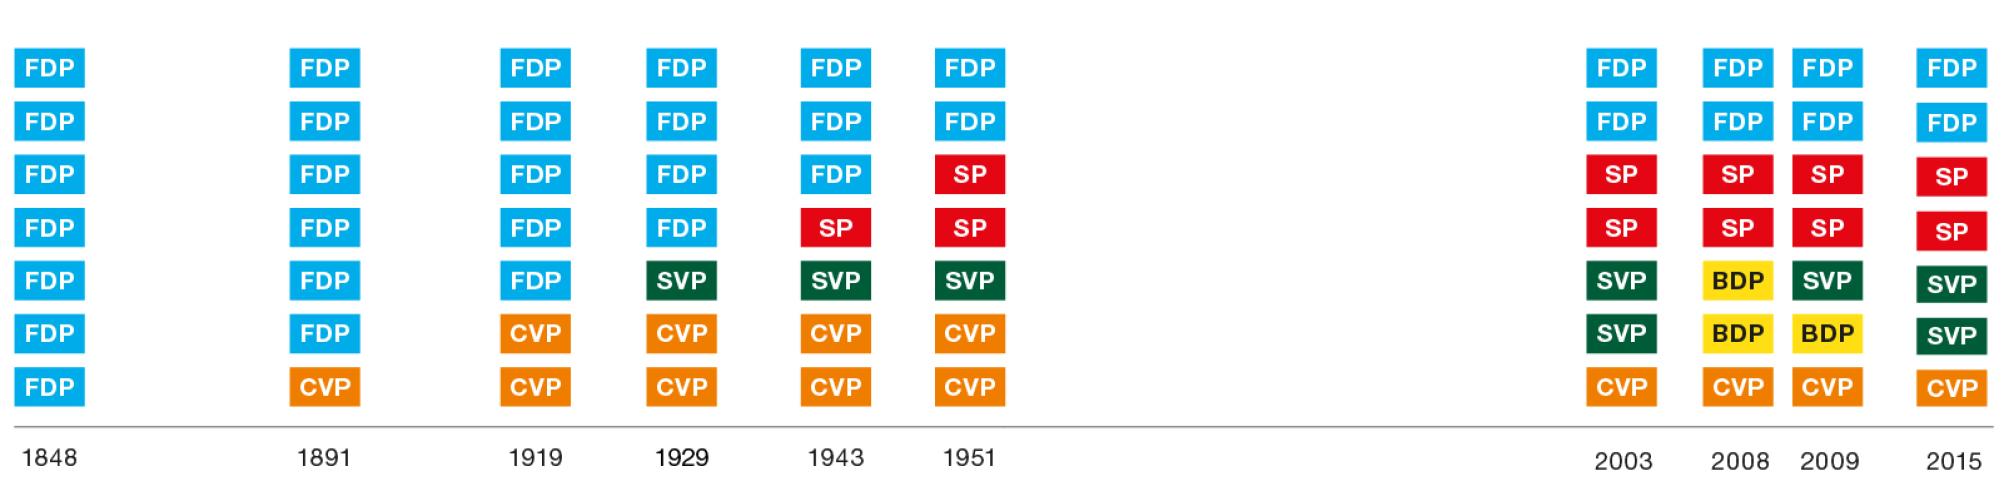 Die Grafik zeigt die Parteien im Bundesrat bis ins Jahr 1848 zurück. Sie macht deutlich, dass sich der Bundesrat von einer Einparteien- zu einer Vielparteien-Regierung entwickelt hat. 1848 war im Bundesrat nur eine einzige Partei vertreten, nämlich die FDP. Seit 1943 sind vier verschiedene Parteien im Bundesrat vertreten, nämlich die FDP, die CVP, die SVP und die SP.